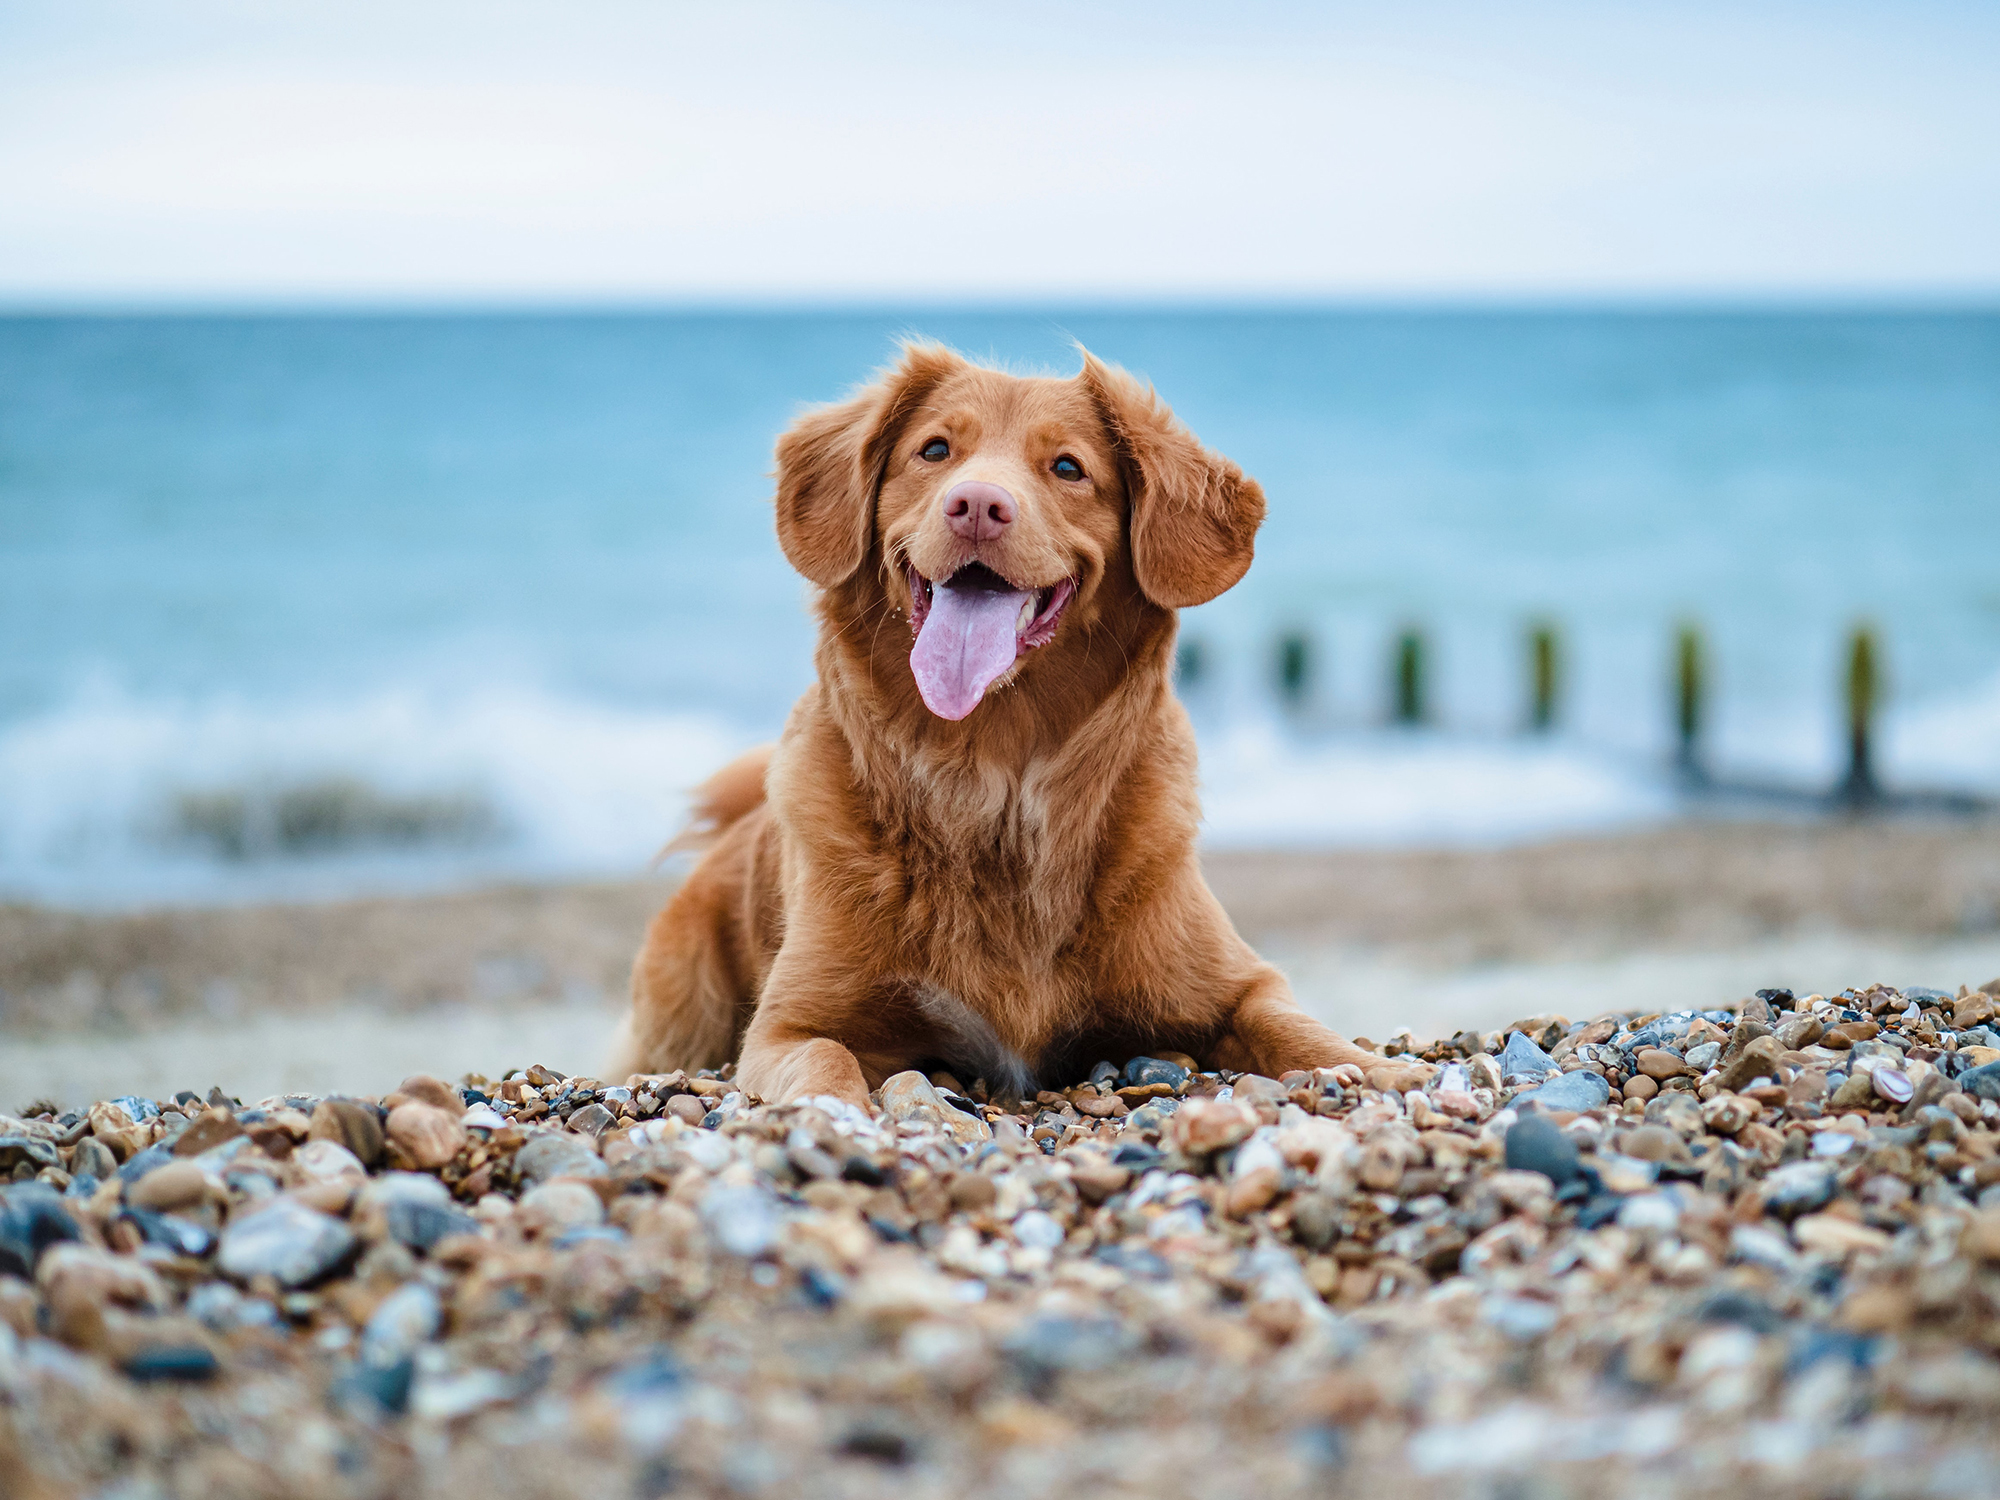 Kutyáink nagyon fotogének tudnak lenni - sokan készítenek is kutyájuknak profilt a közösségi médiában